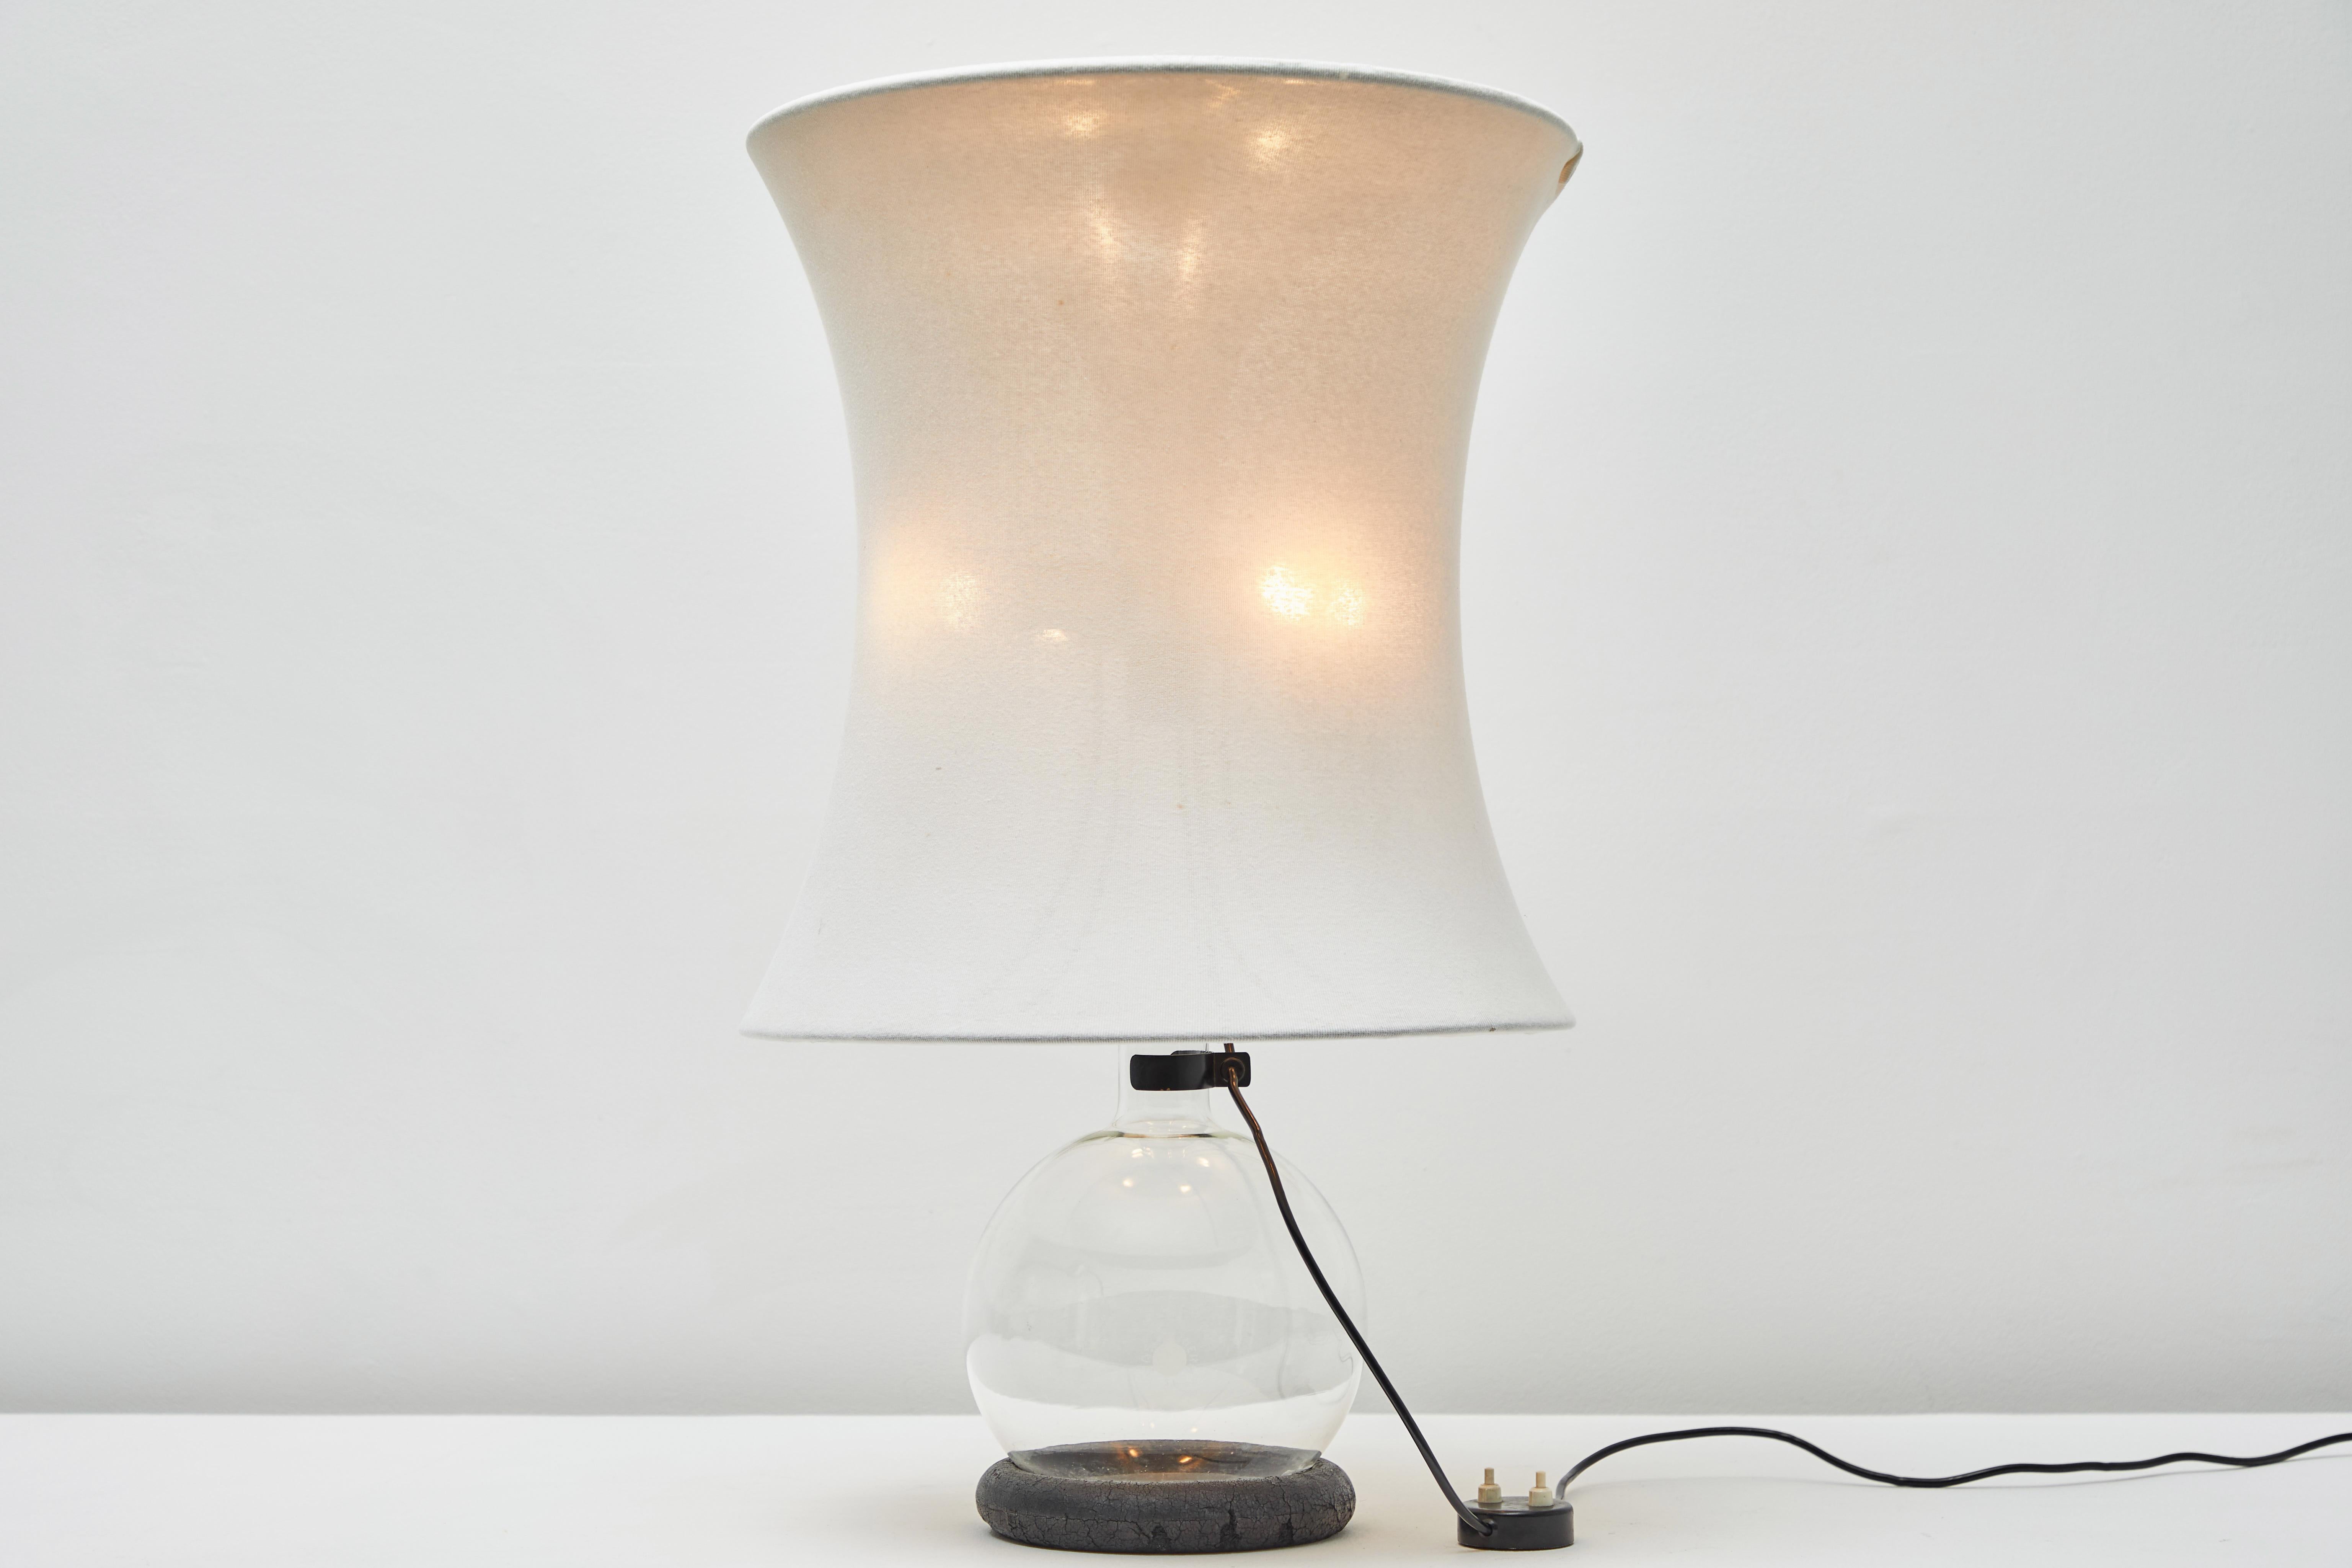 Rare lampe de table lotus de Gianfranco Frattini pour Meroni. Créé et fabriqué en Italie, 1966. Support avec anneau en bois, base en verre, armature métallique recouverte de tissu. L'abat-jour est fixé par un déflecteur en aluminium au sommet de